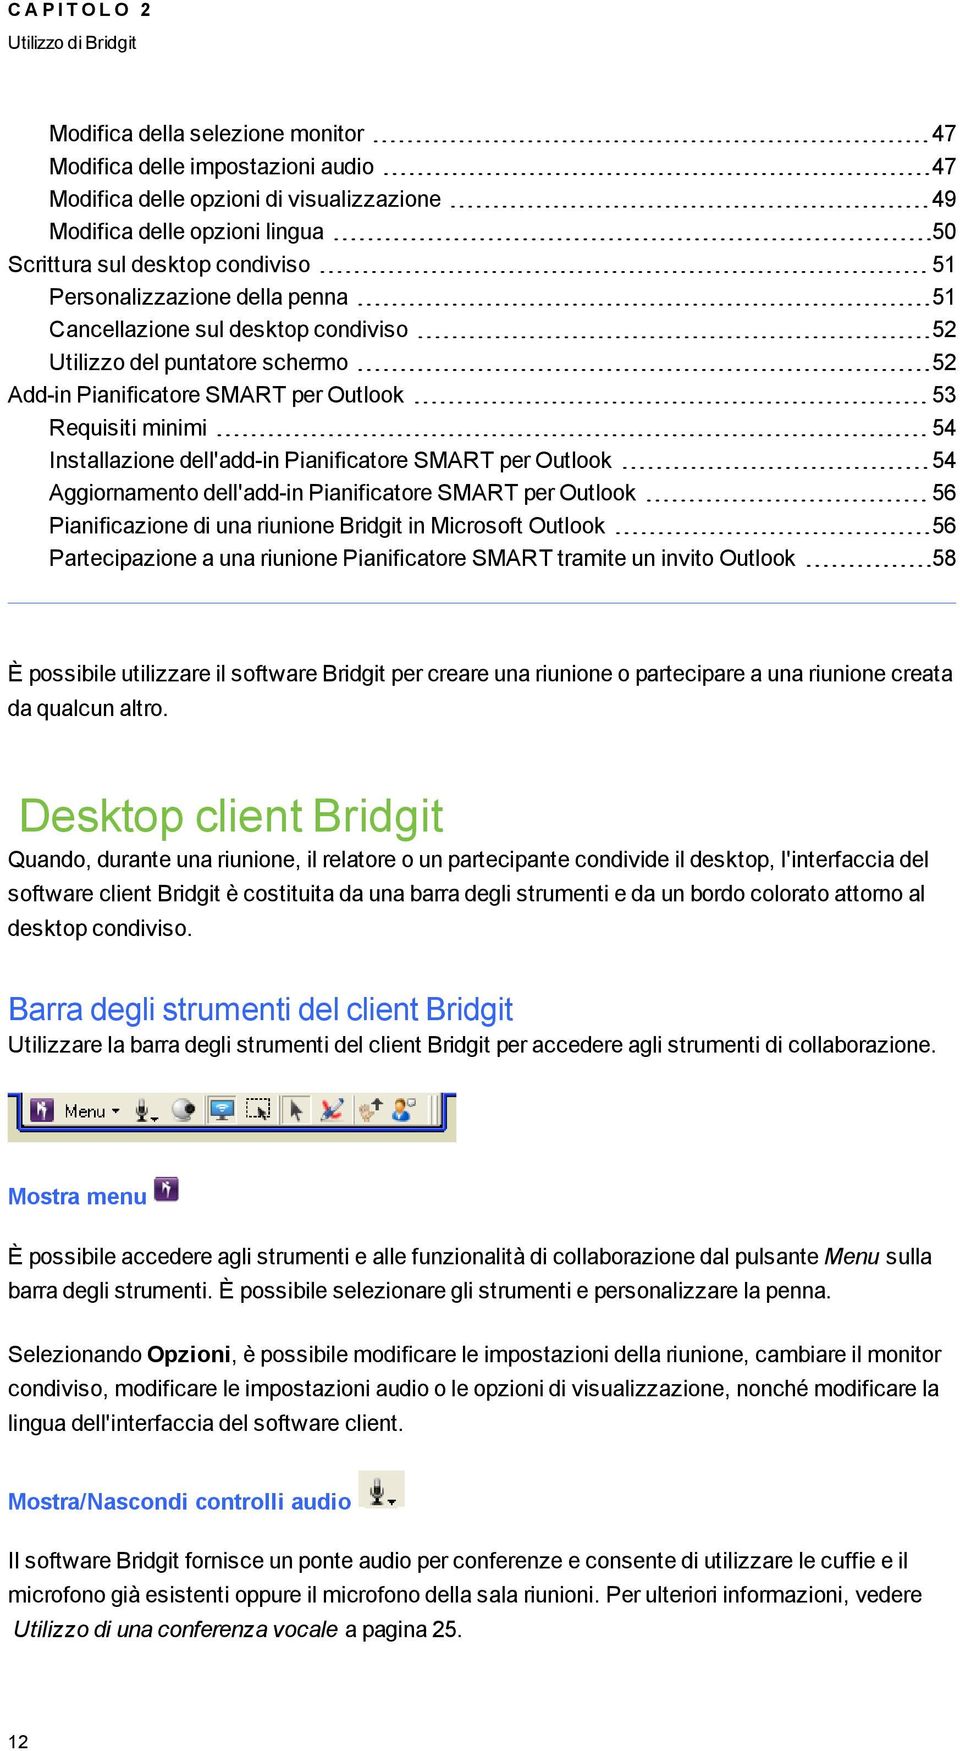 dell'add-in Pianificatore SMART per Outlook 54 Aiornamento dell'add-in Pianificatore SMART per Outlook 56 Pianificazione di una riunione Bridit in Microsoft Outlook 56 Partecipazione a una riunione